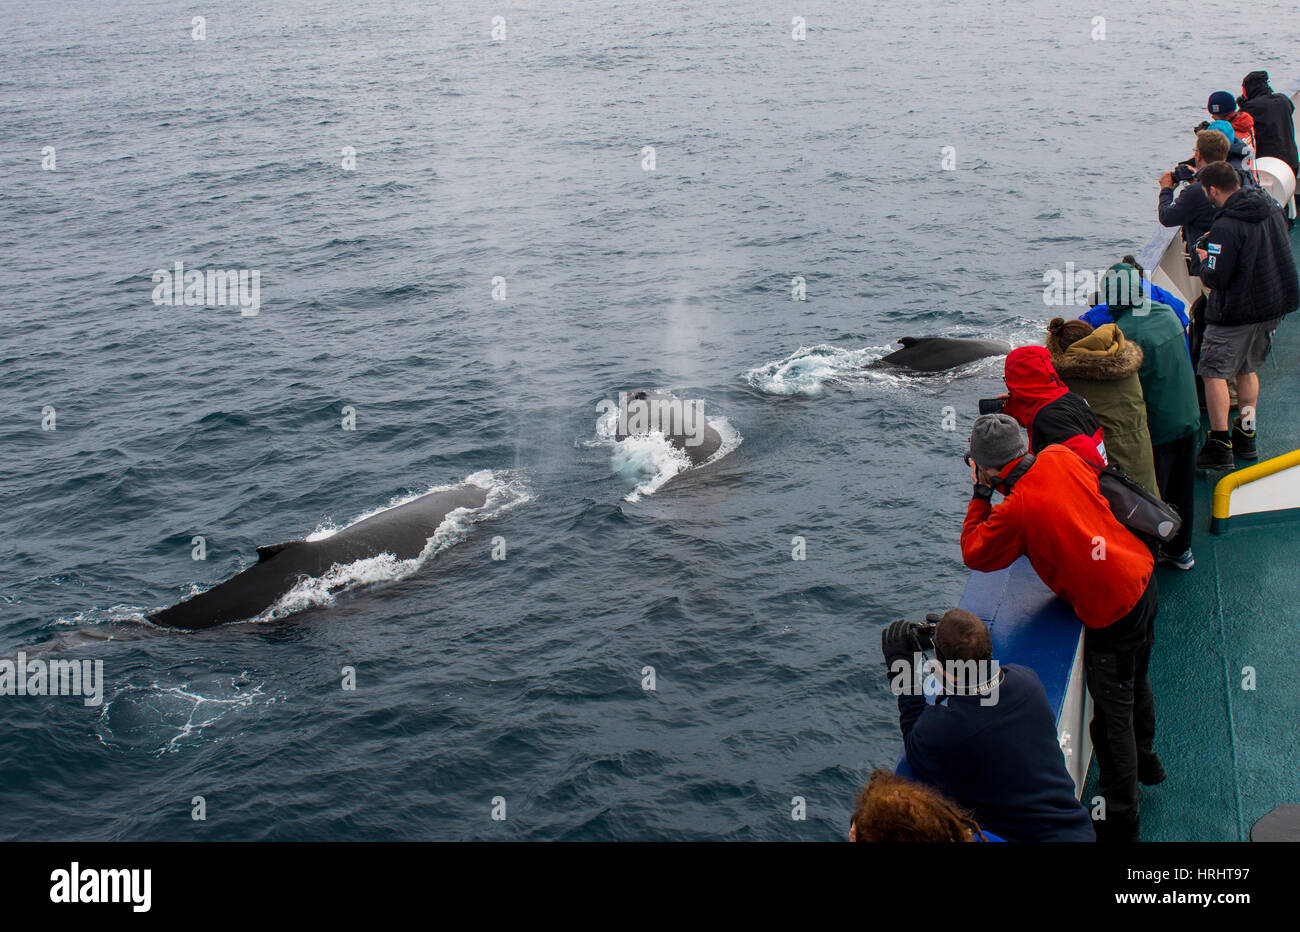 Los turistas observando las ballenas jorobadas (Megaptera novaeangliae), Islas Sandwich del Sur, la Antártida Foto de stock